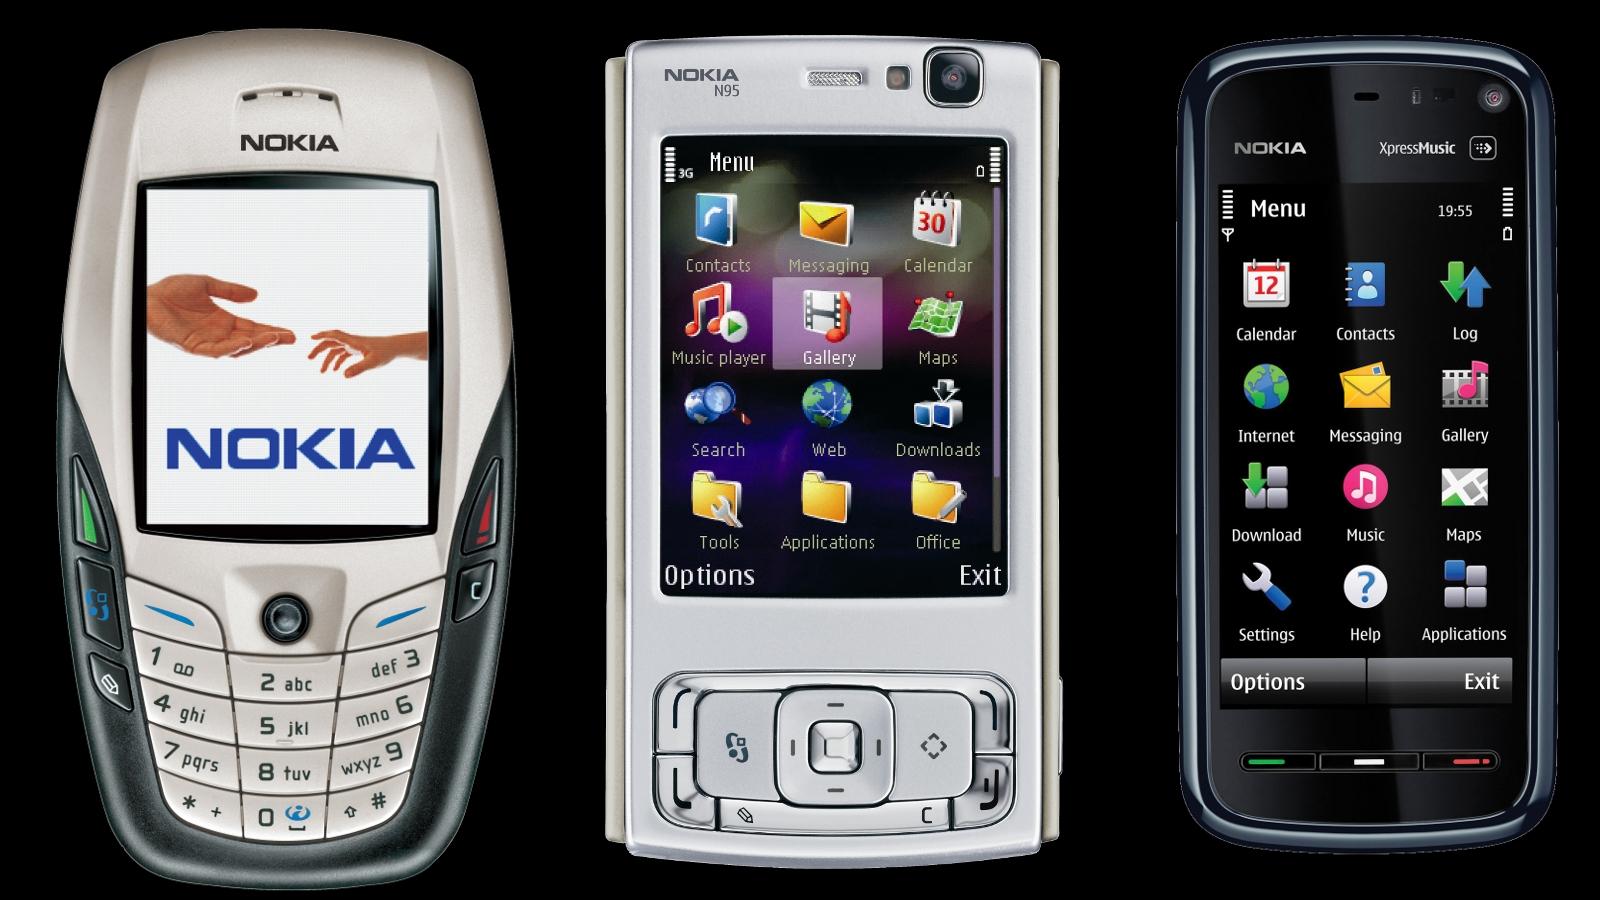 Nokia vil vise frem Symbian-nyheter  